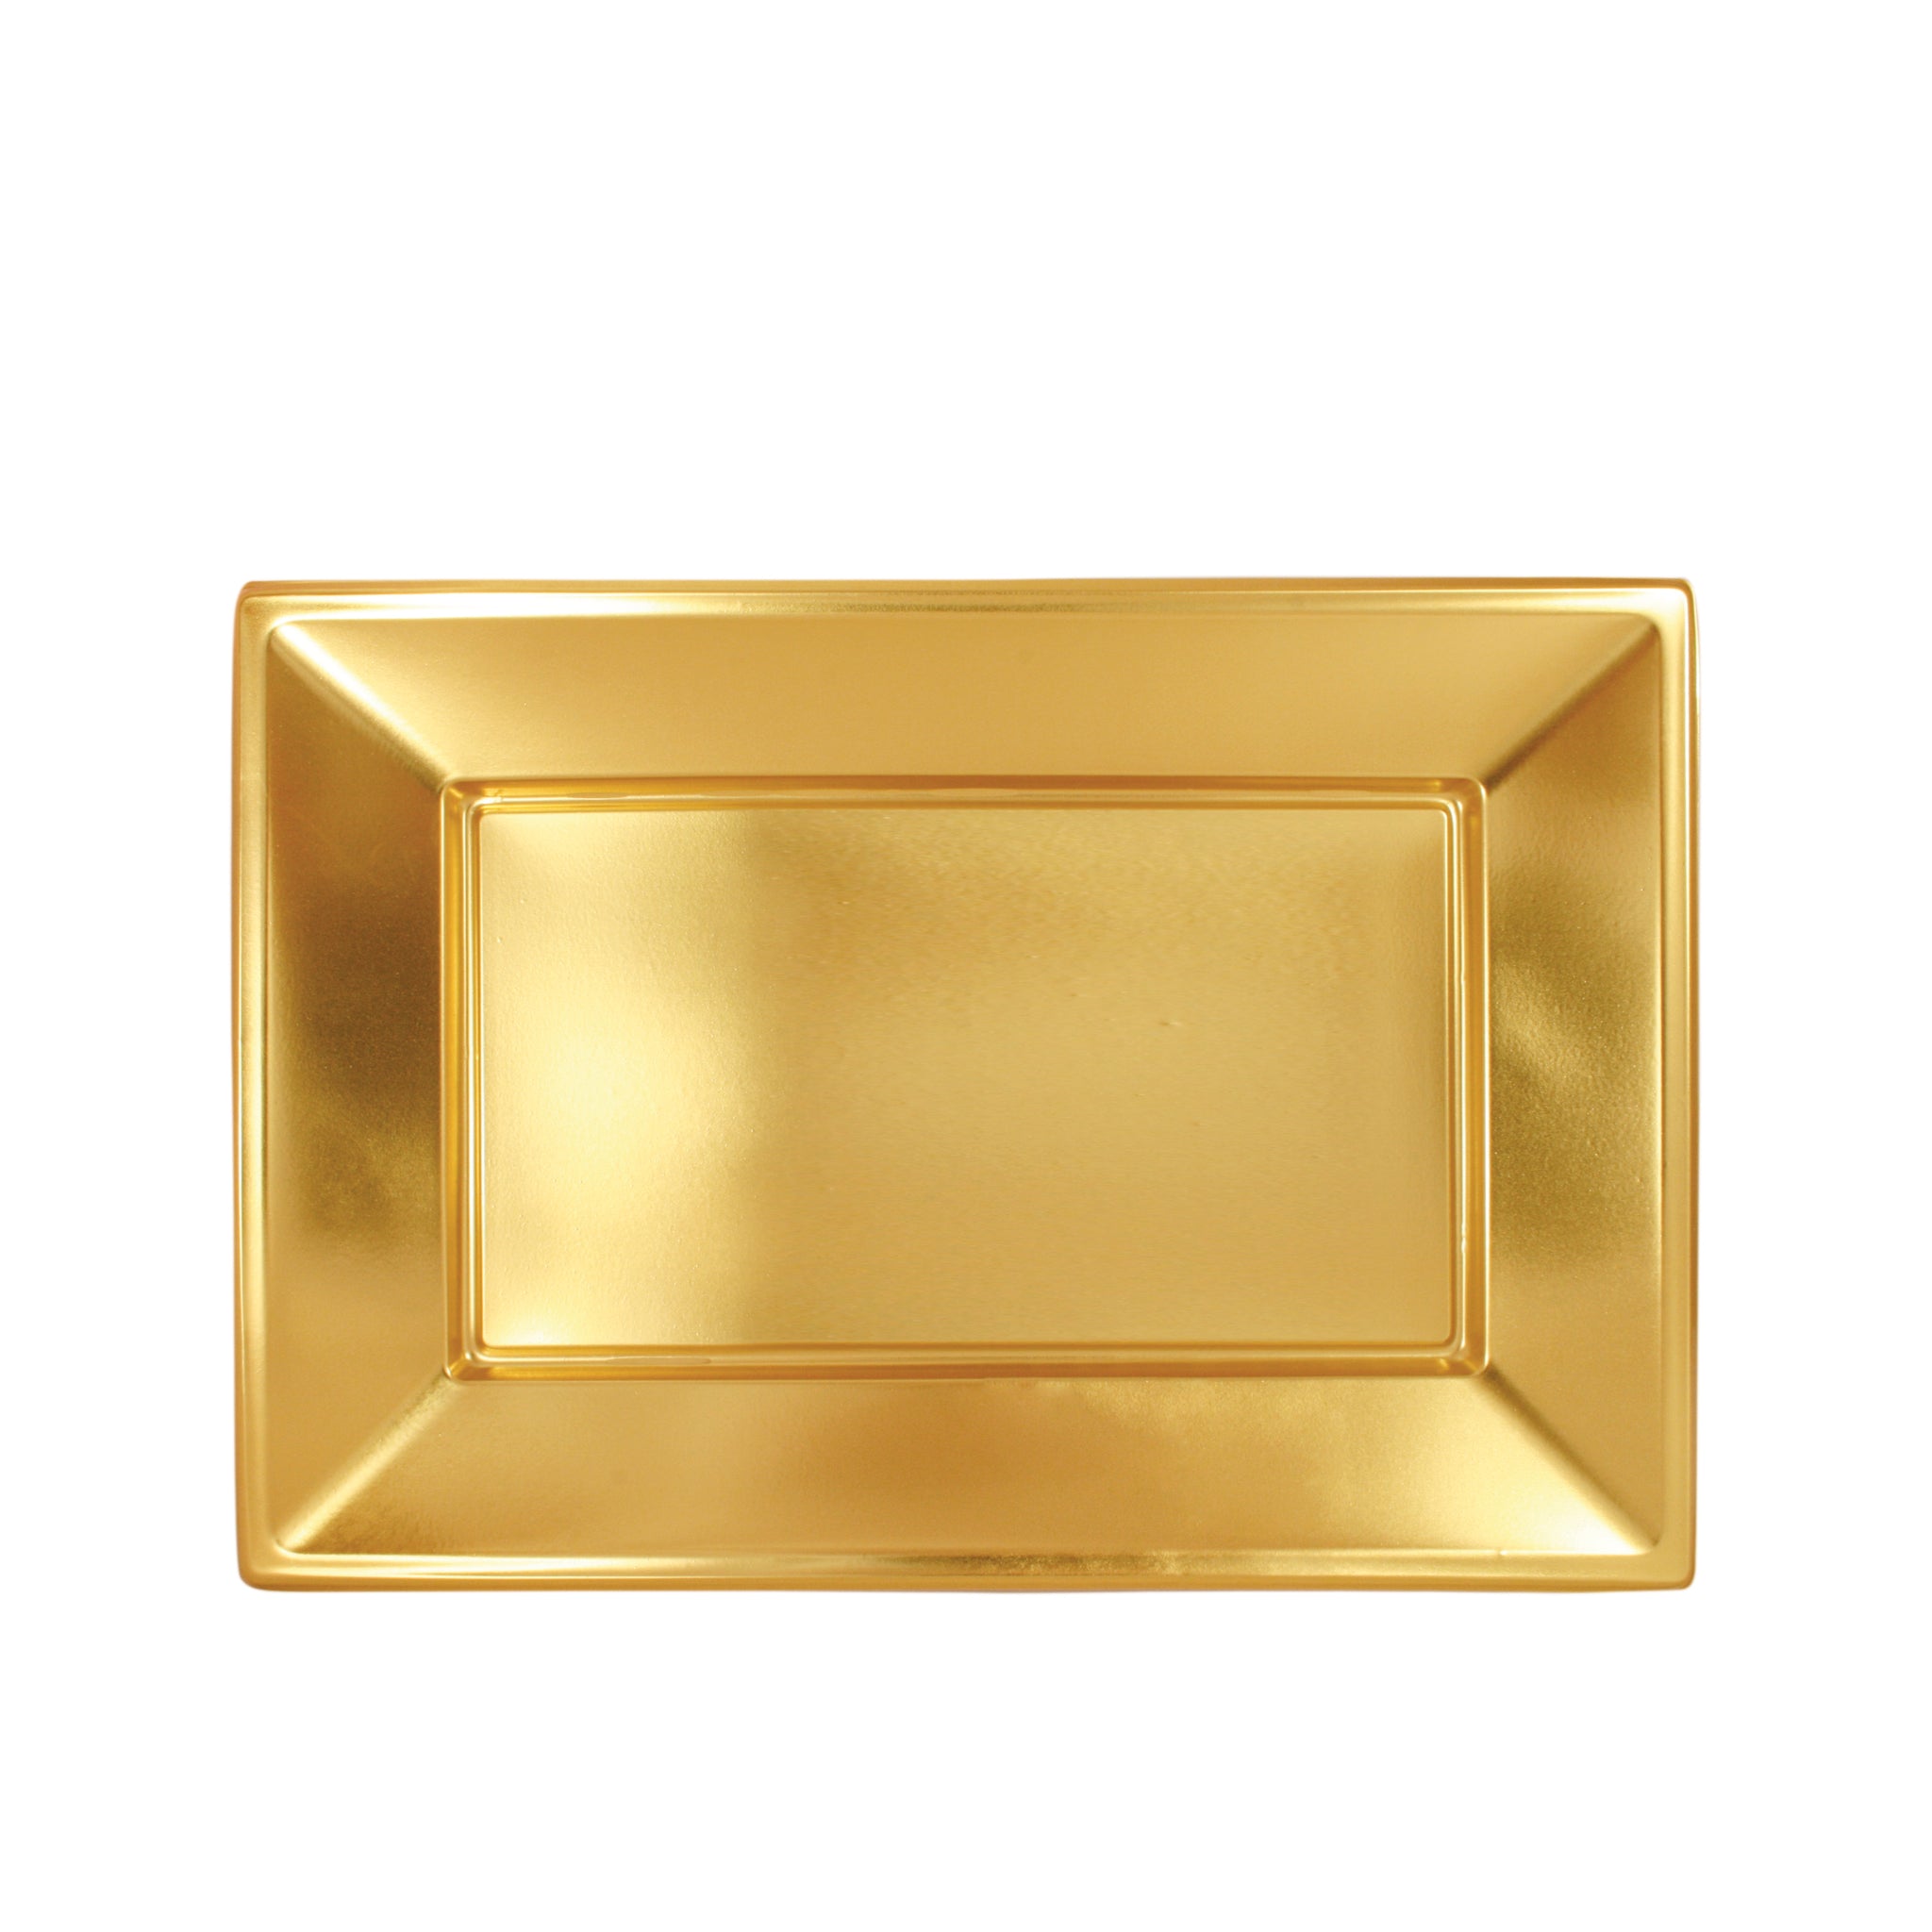 Gold metallic rectangular tray / pack 2 units